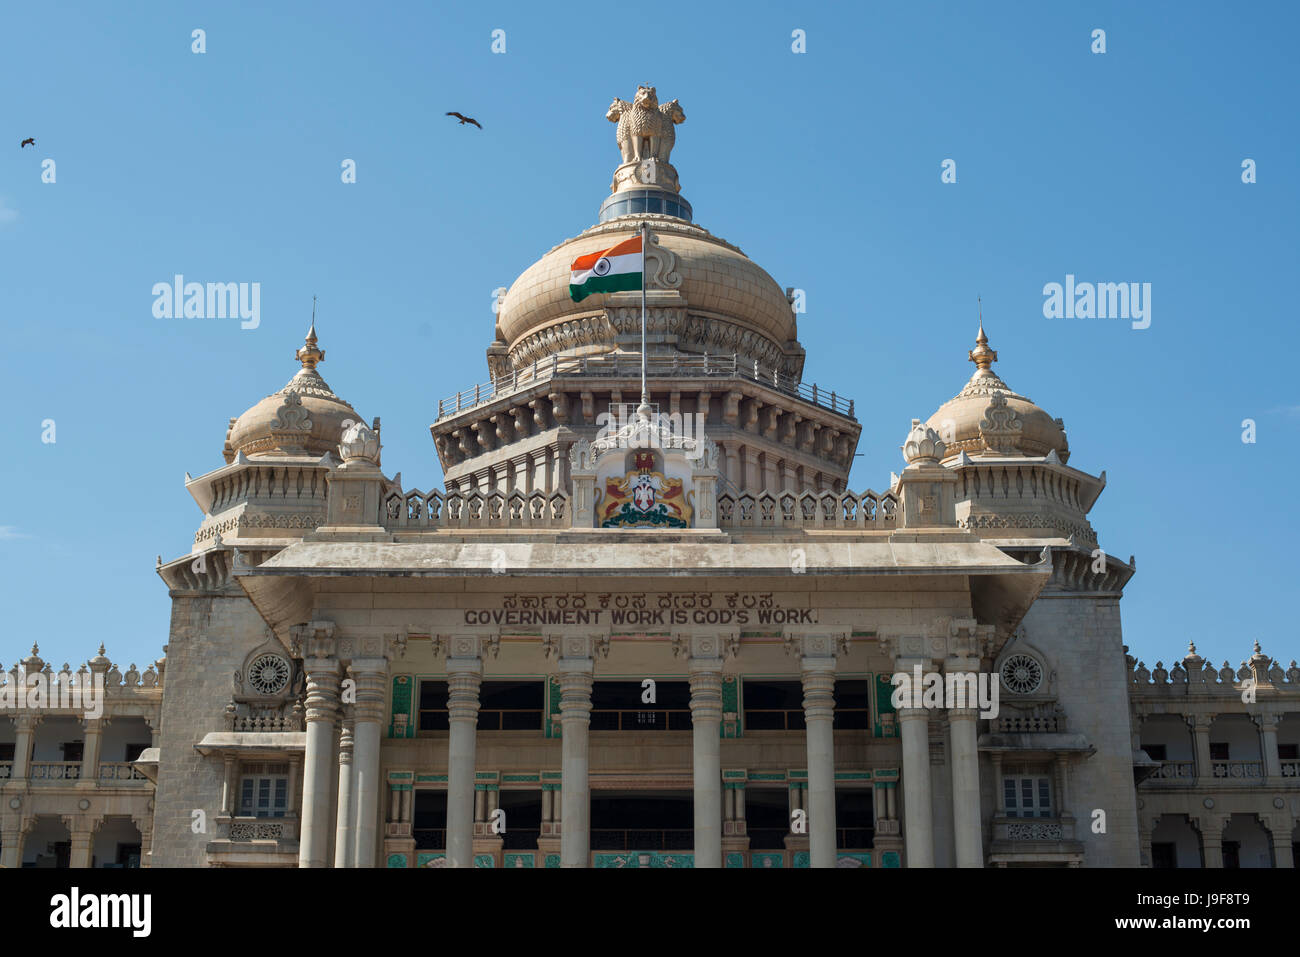 La bandera nacional de la India vuela al frente de las oficinas del gobierno estatal, (Vidhana Soudha) en Bengalaru, Karnatake, India Foto de stock